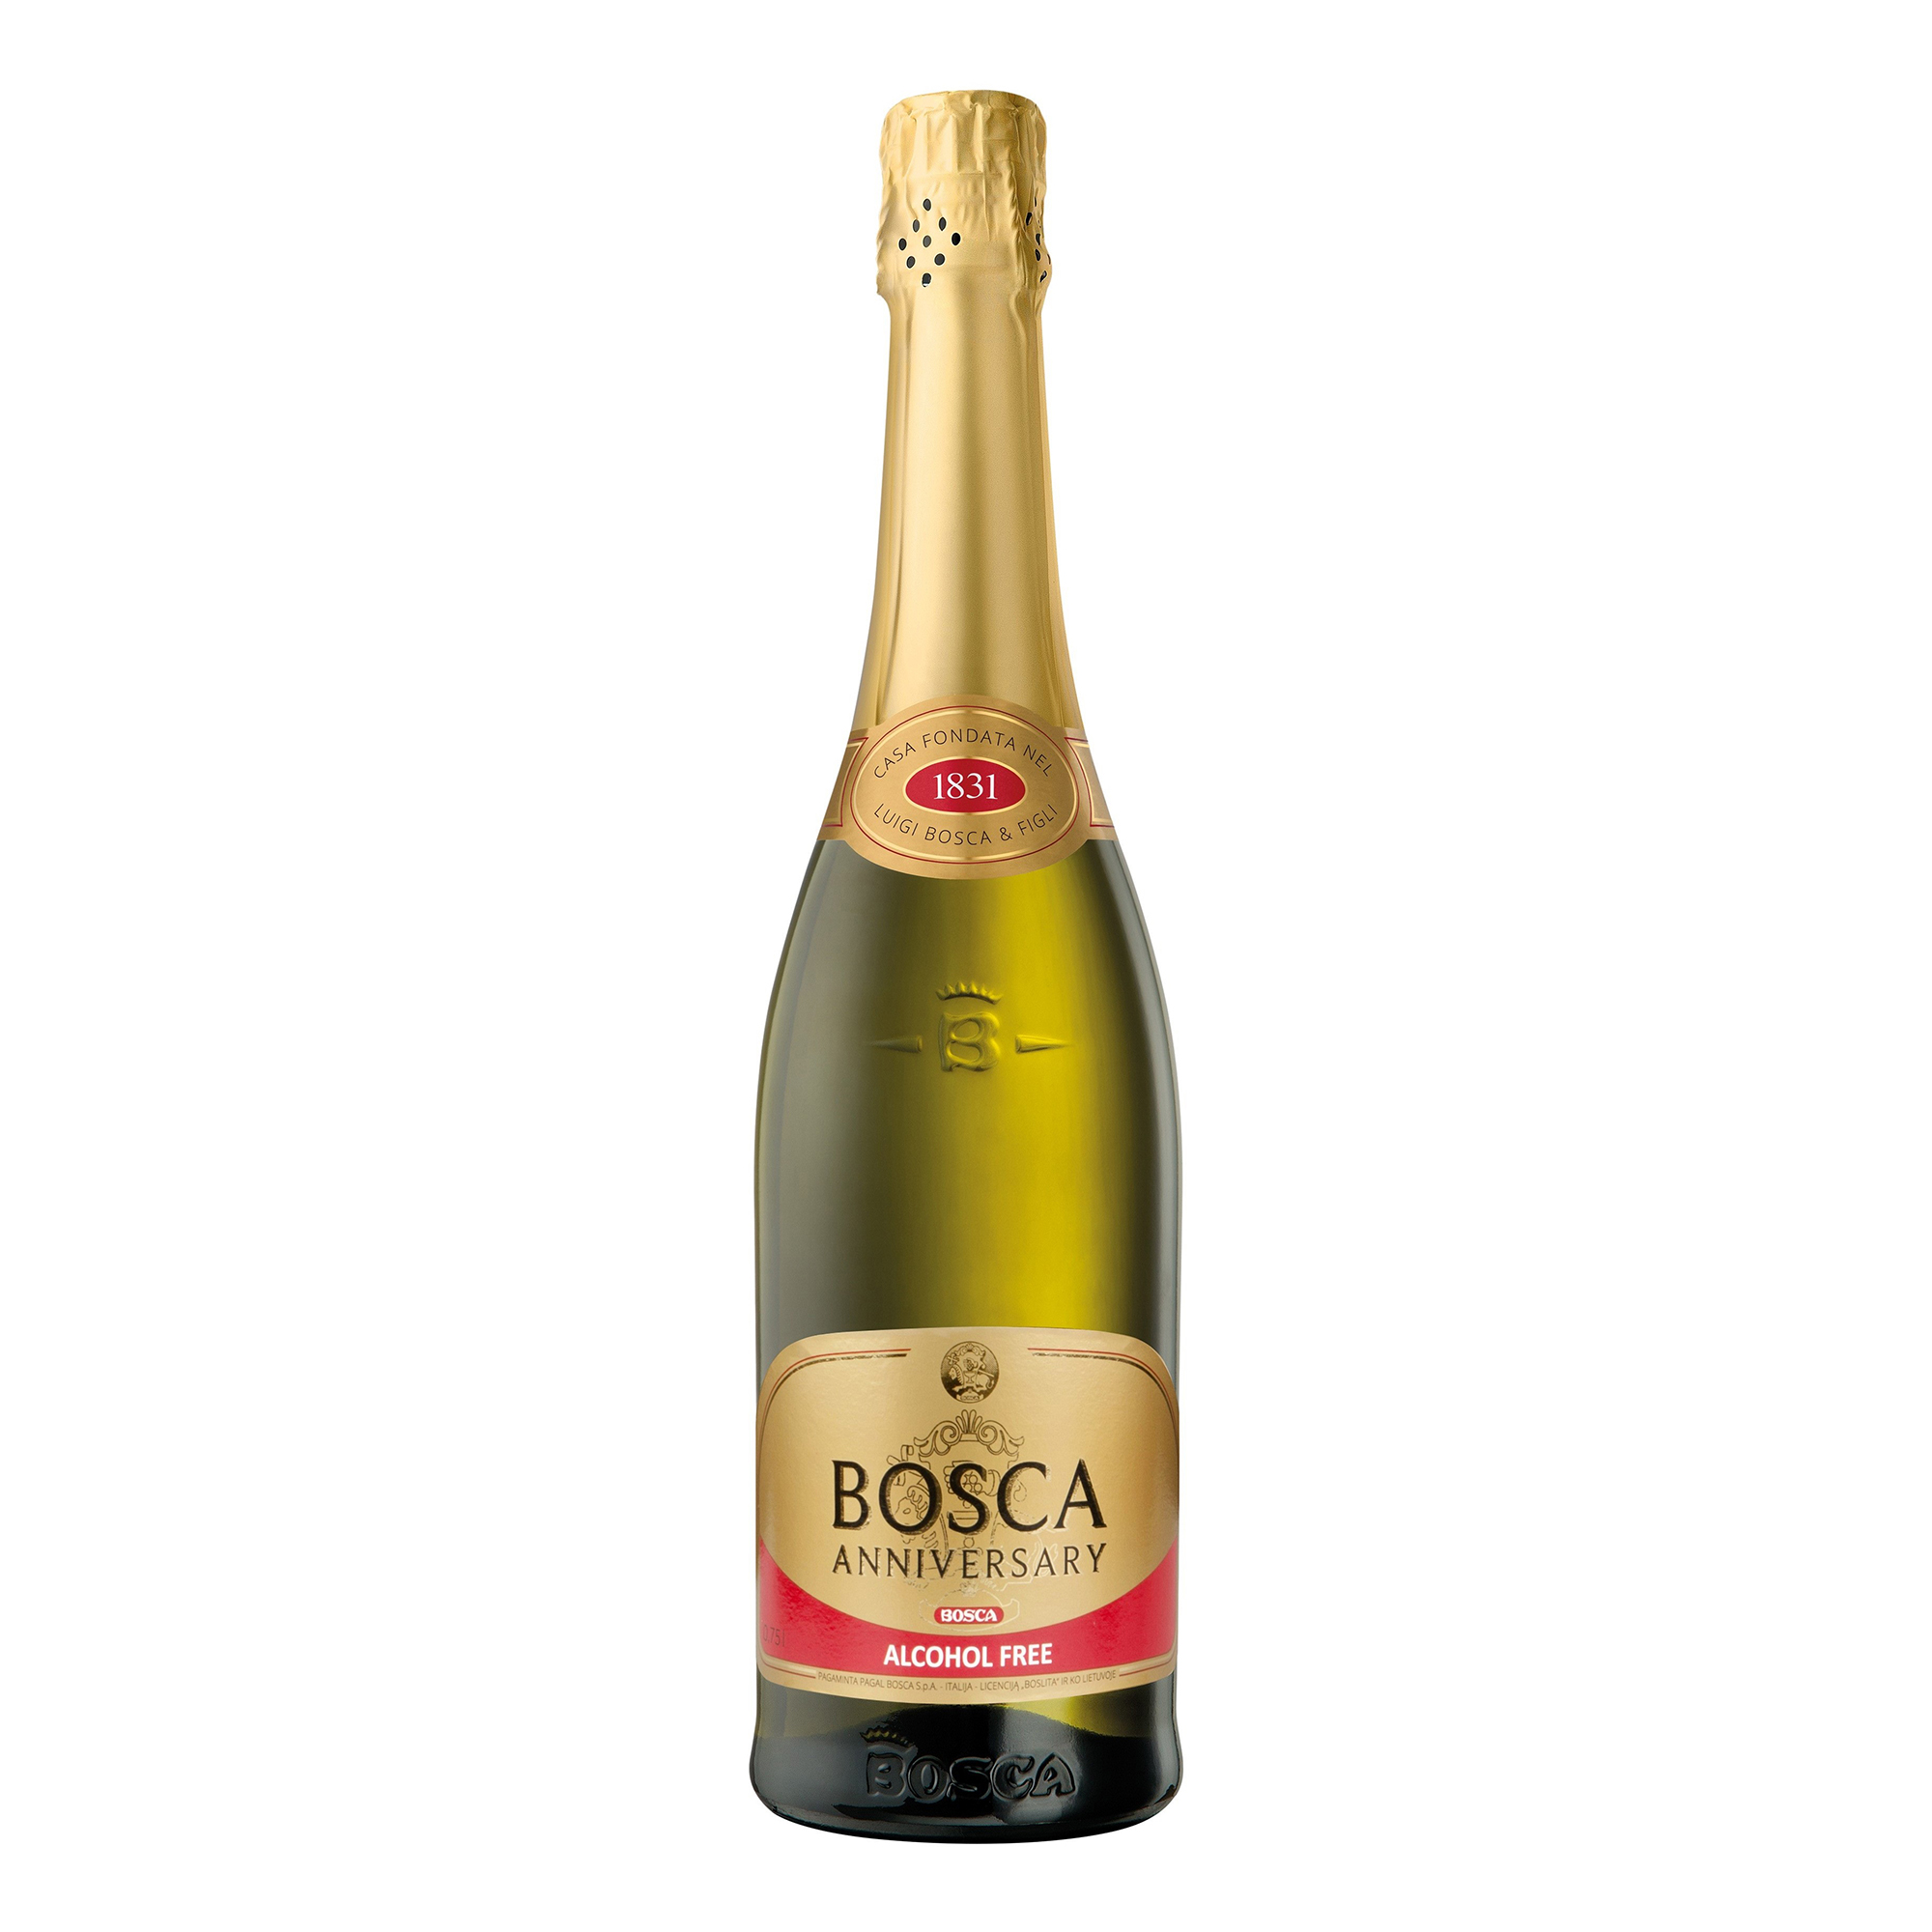 Боско безалкогольное. Bosca Анниверсари. Боска Анниверсари шампанское. Шампанское Боско Голд Лабел. Bosca Anniversary Sweet, Gold Label, 7,5%.